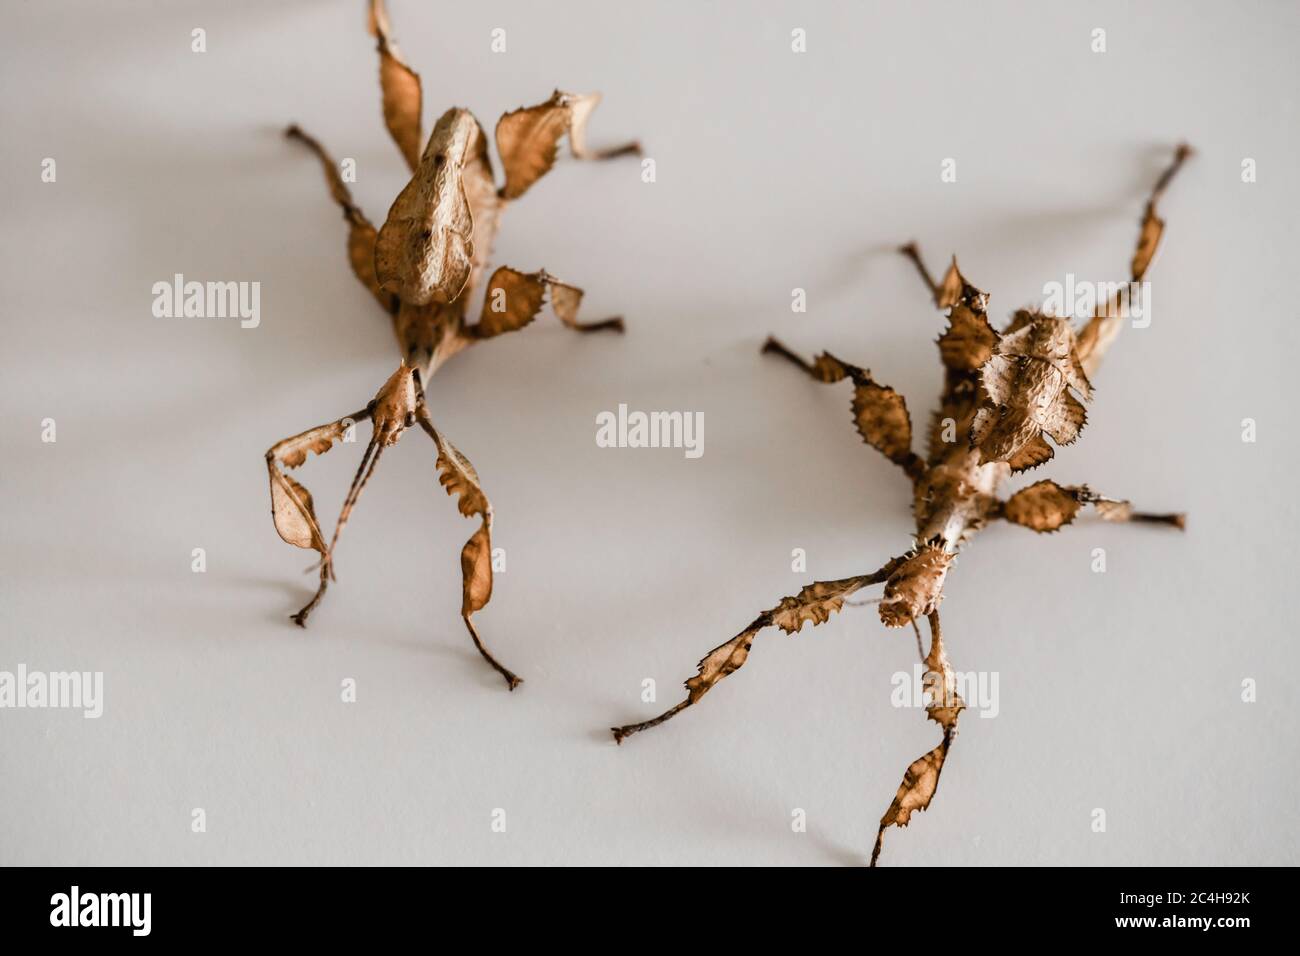 Zwei stachelige Blattinsekten, ein Make auf der linken Seite und ein Weibchen auf der rechten Seite (Extatosoma tiaratum) Stockfoto